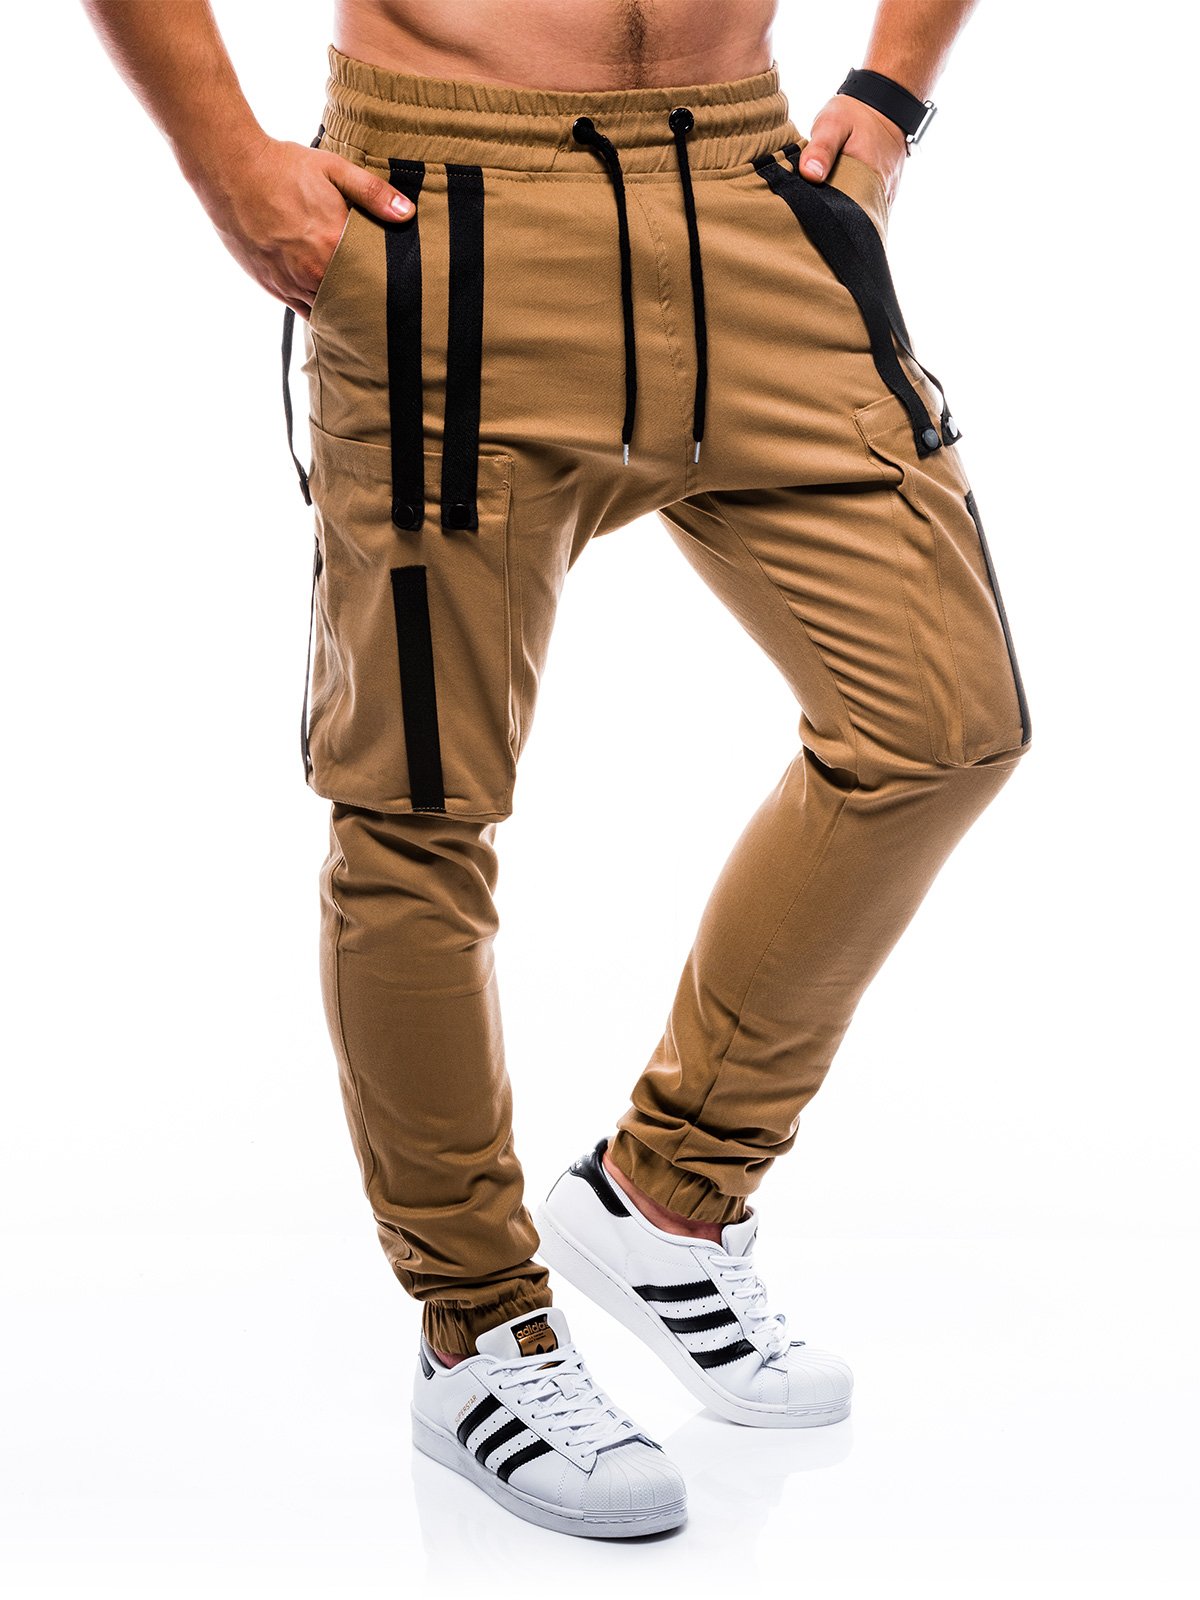 Men's pants joggers P671 - camel | MODONE wholesale - Clothing For Men